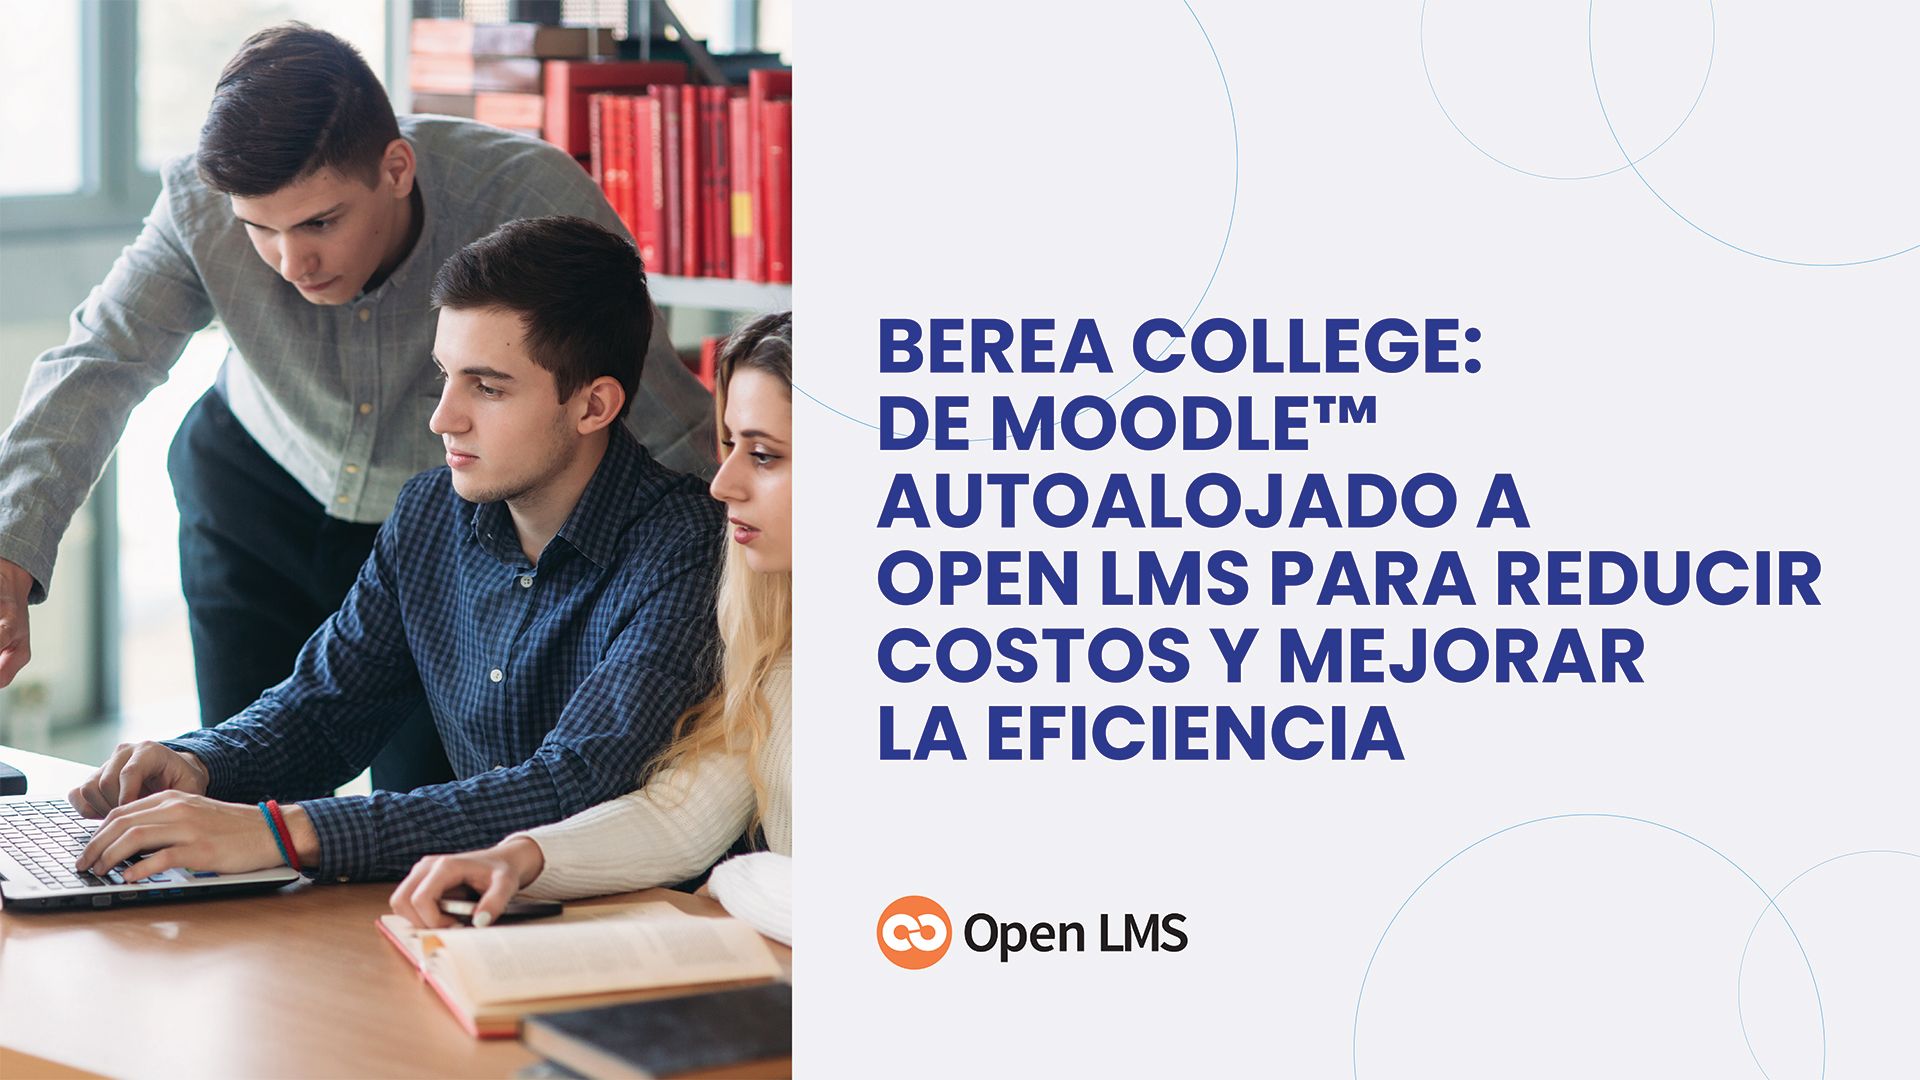 La transición de Berea College: de Moodle™ autoalojado a Open LMS para reducir costos y mejorar la eficiencia